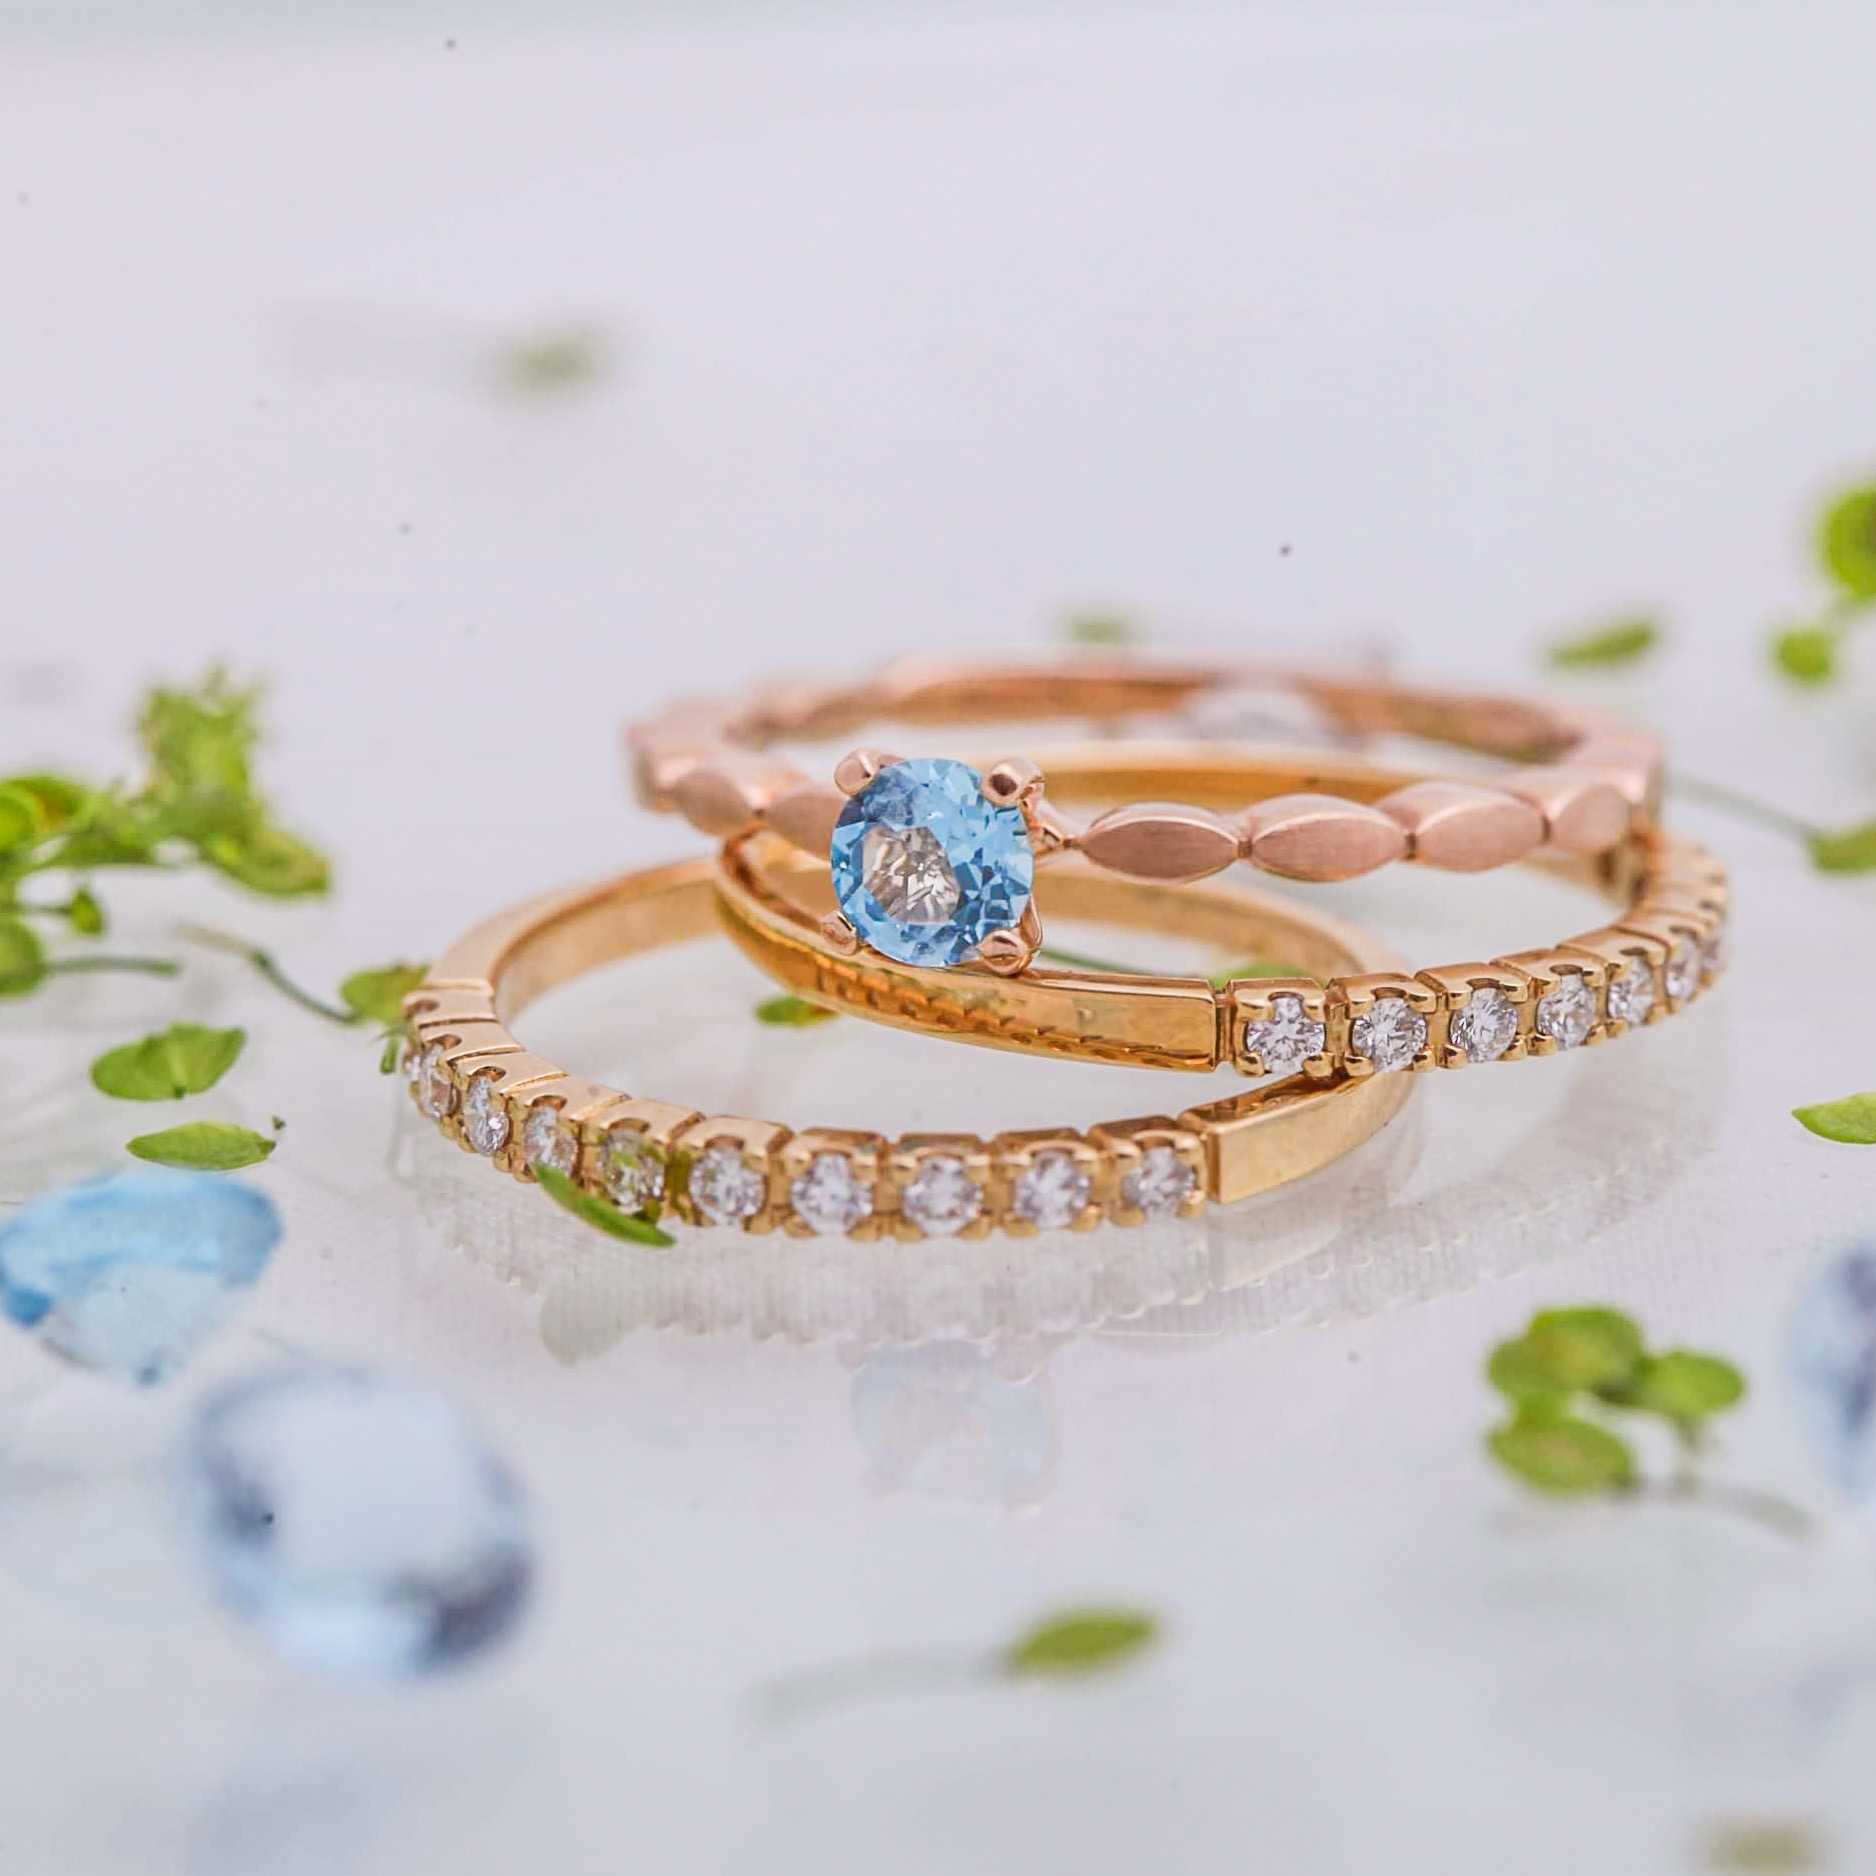 Diamantové snubní prsteny značky FOX zlatnického domu Roudná v Plzni